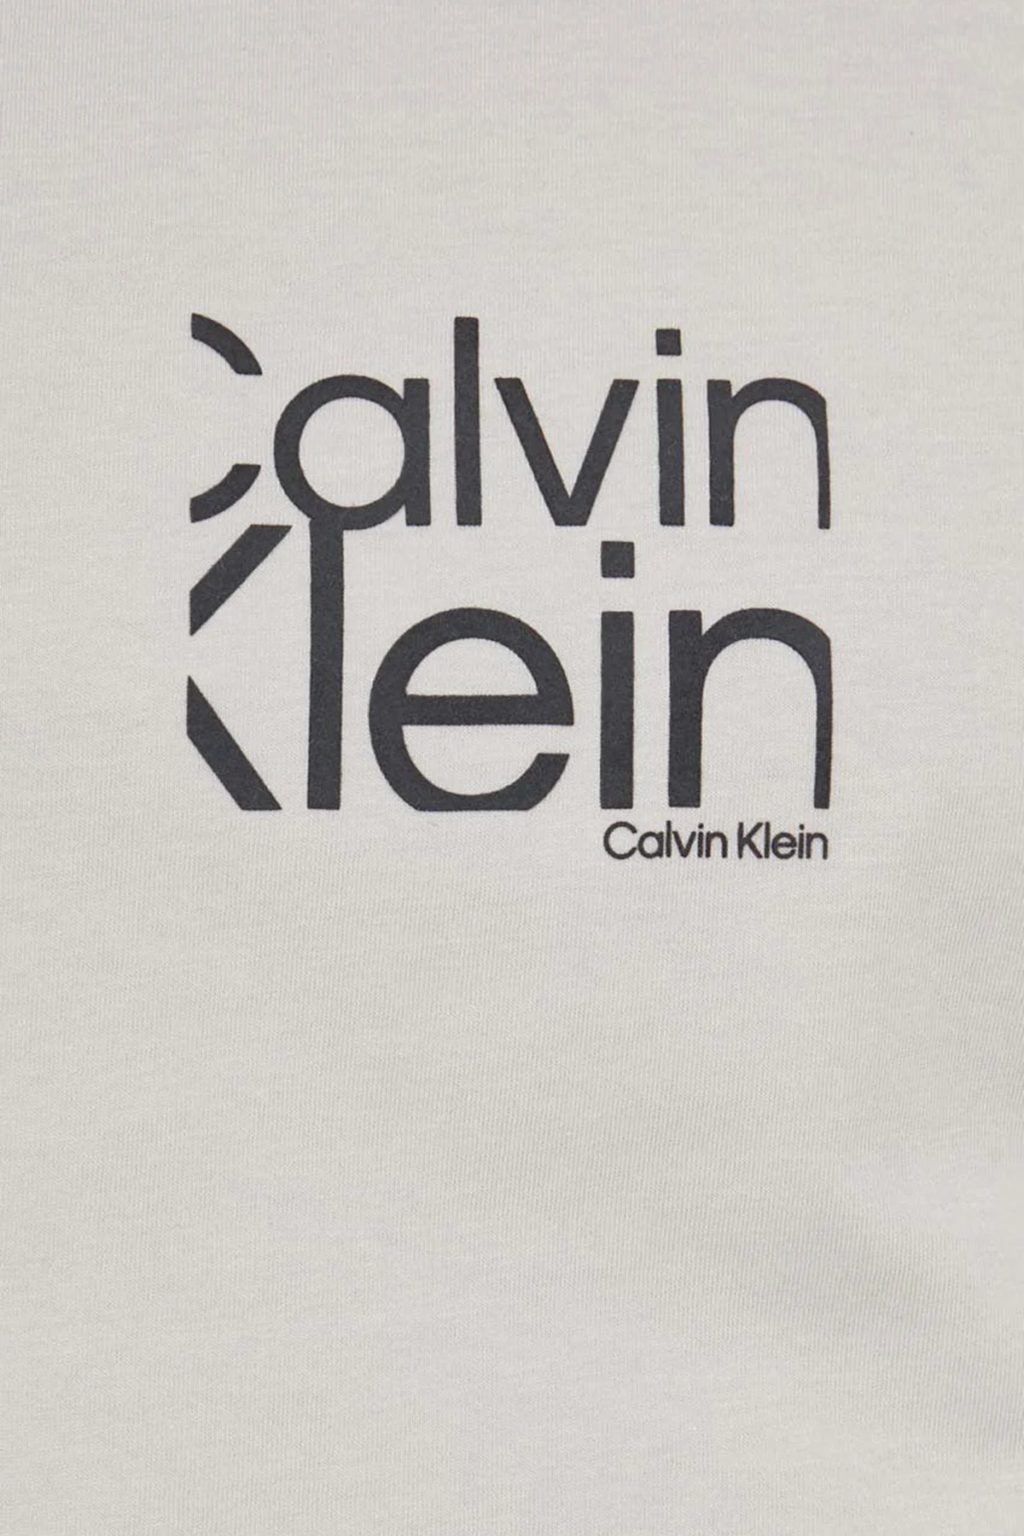 Μπλούζα T-shirt Μπέζ, CALVIN KLEIN